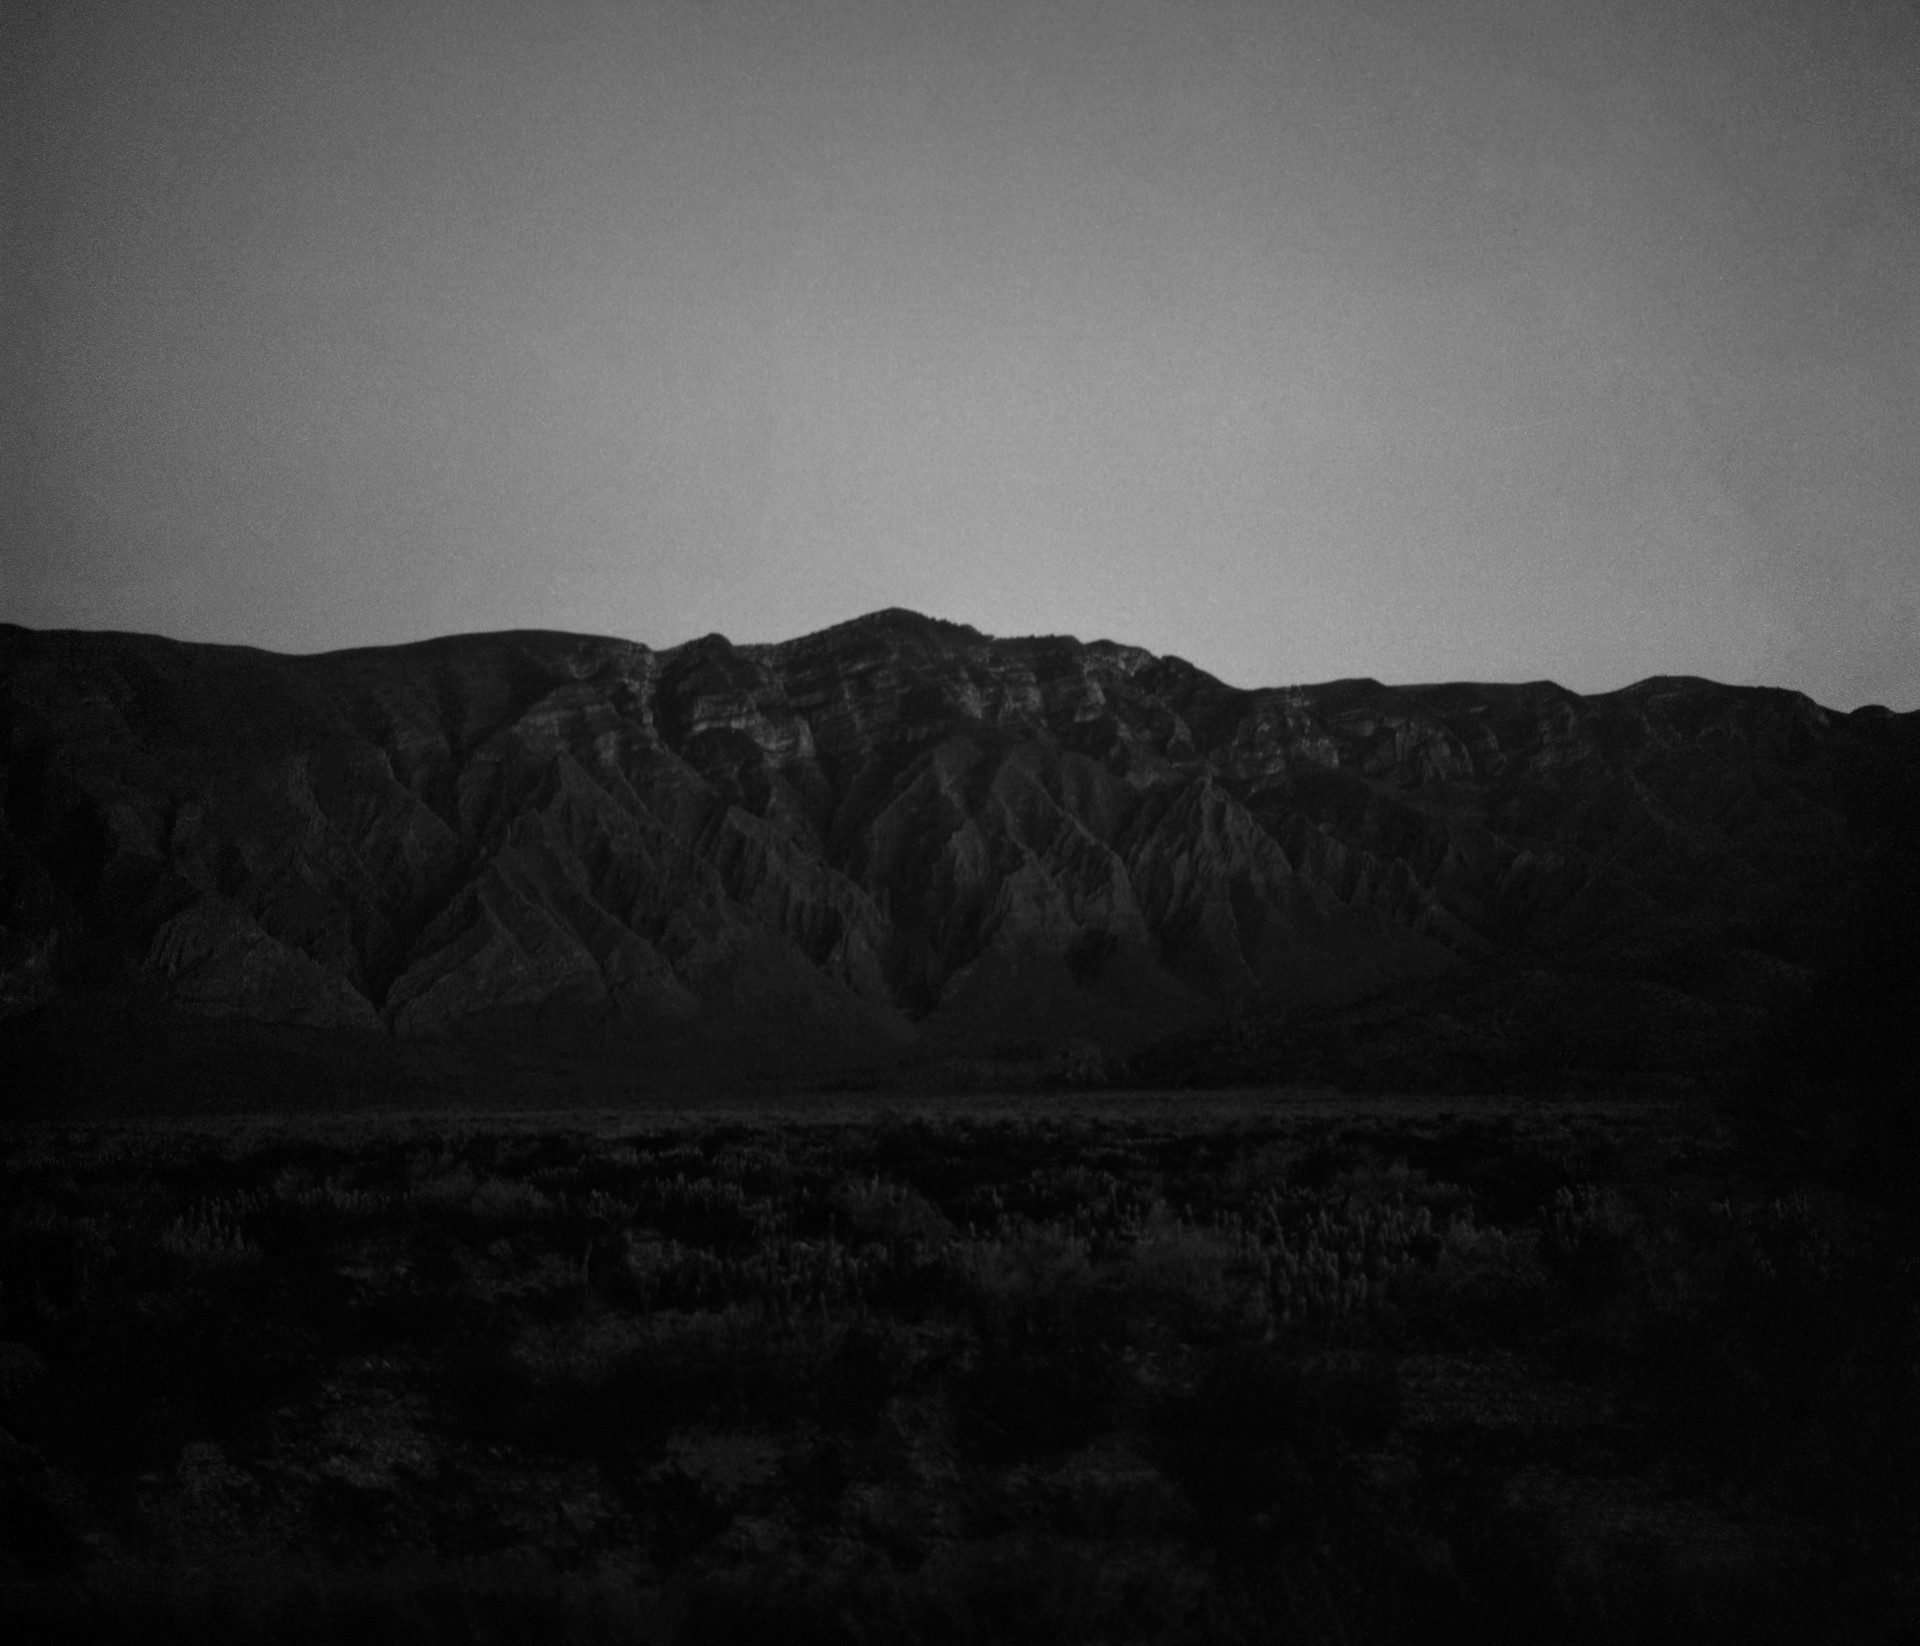 Fotó: Koleszár Adél: Sötétedés a torreoni sivatagban, részlet Az erőszak sebei című sorozatból